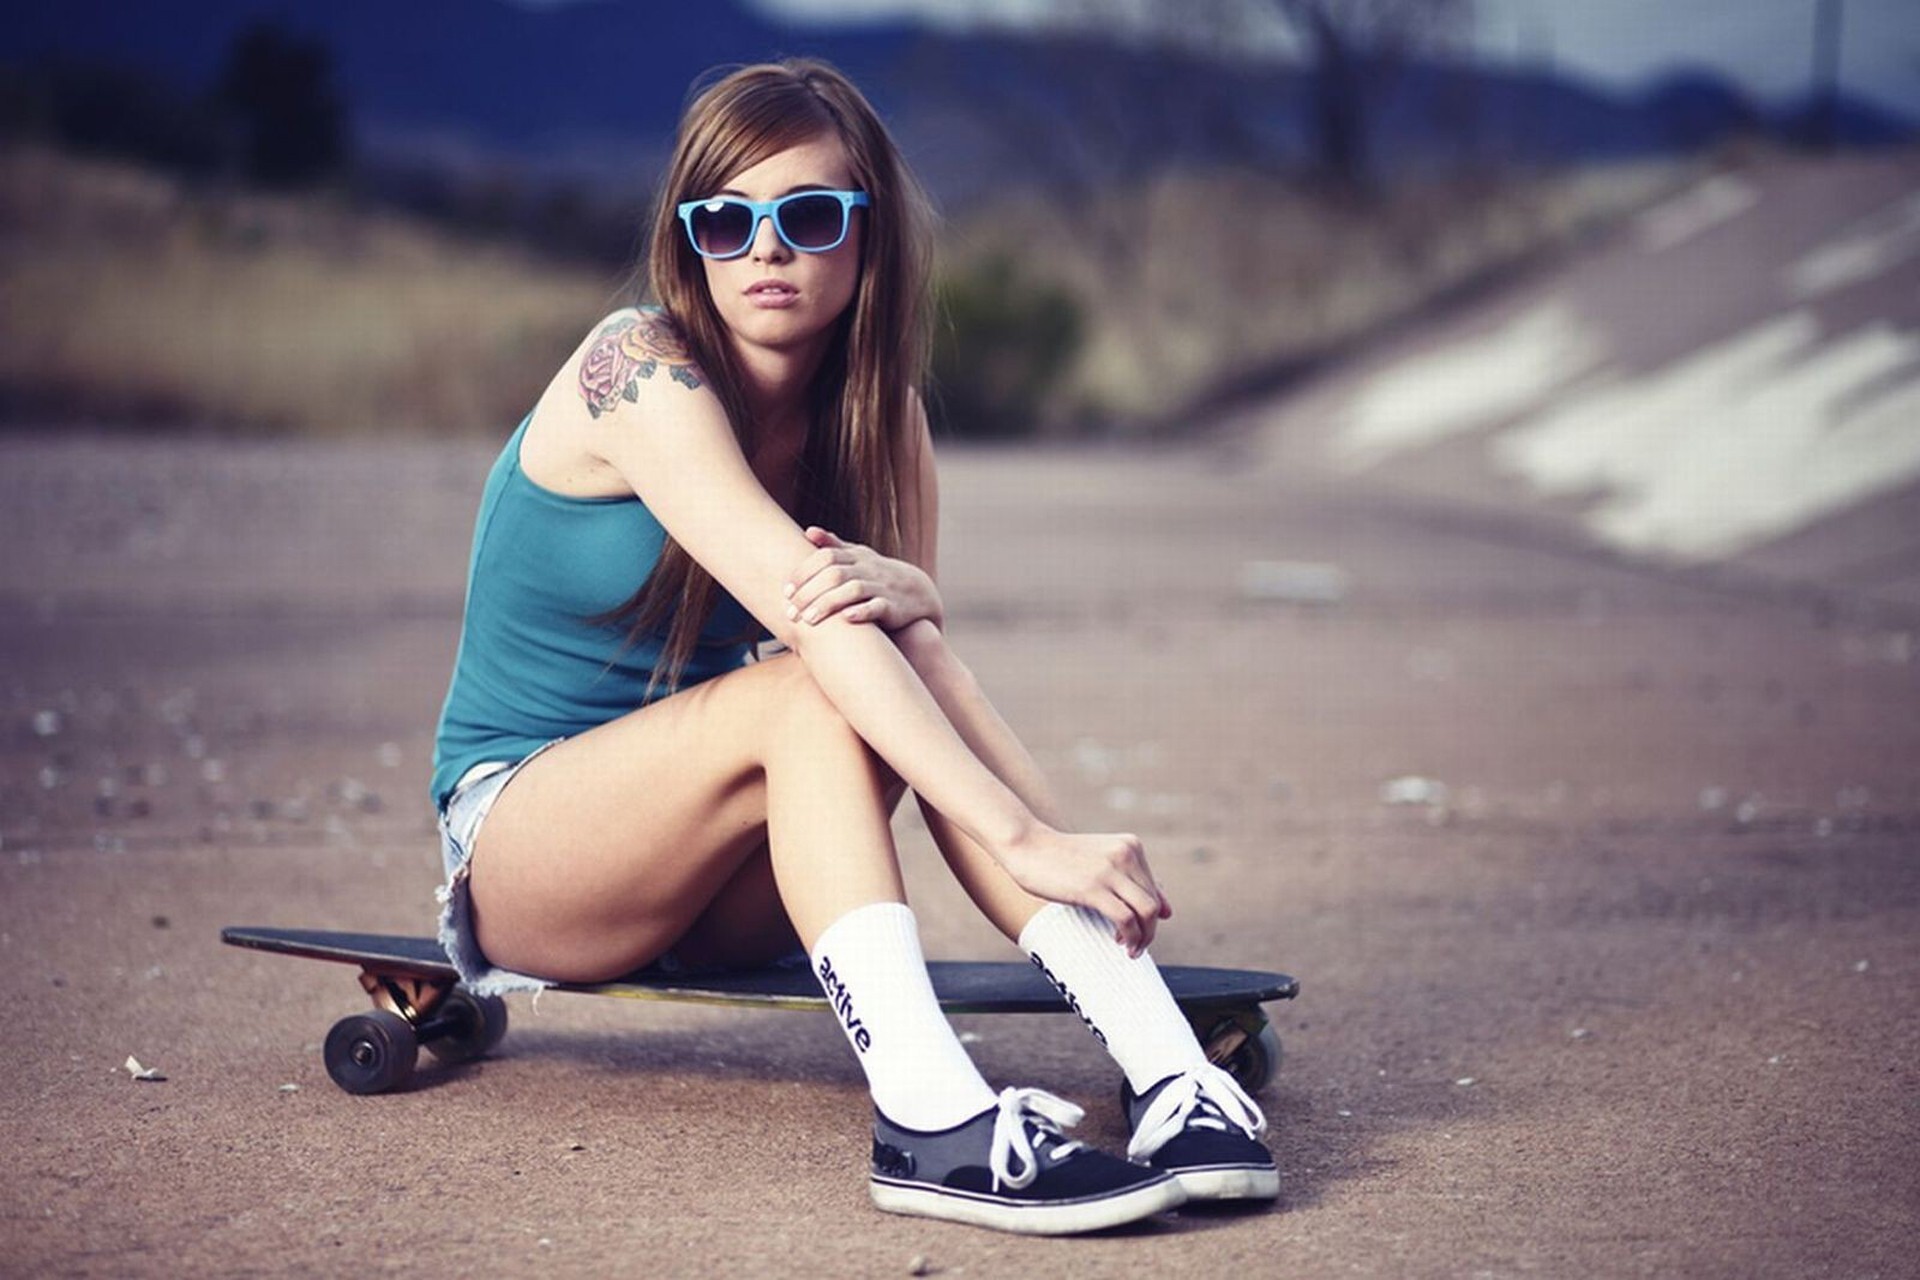 Girl Skateboarding: Skateboard footwear, A type of sports equipment, Maple plywood deck. 1920x1280 HD Wallpaper.